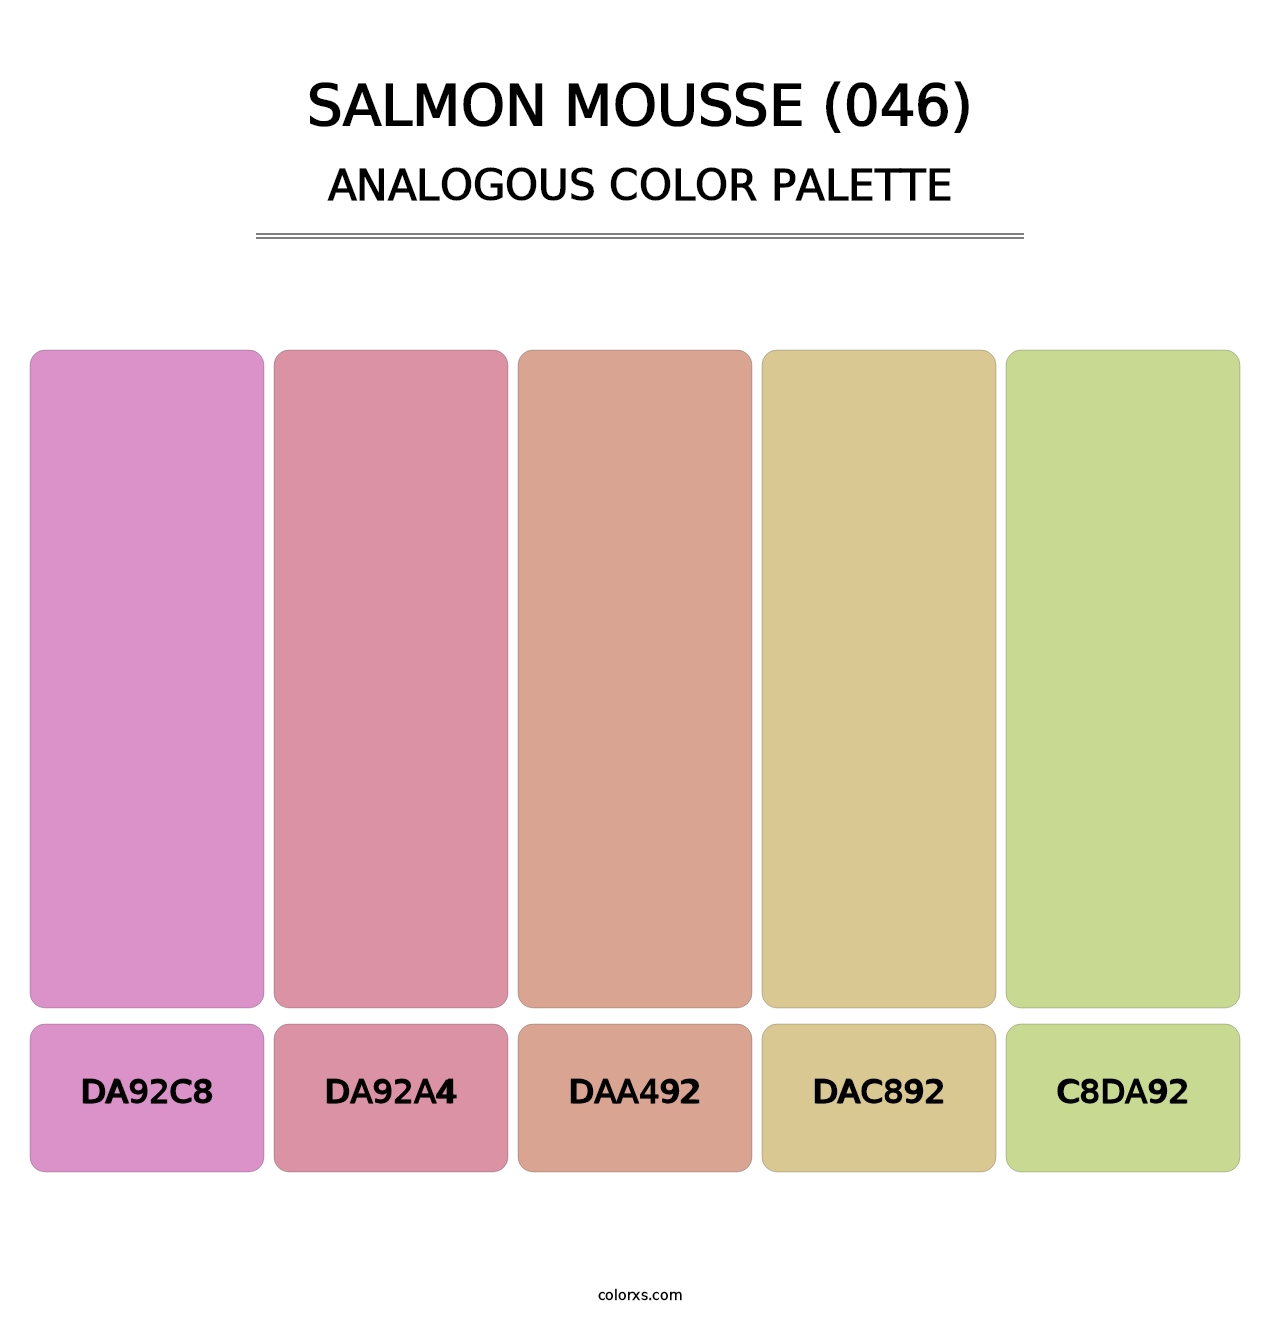 Salmon Mousse (046) - Analogous Color Palette